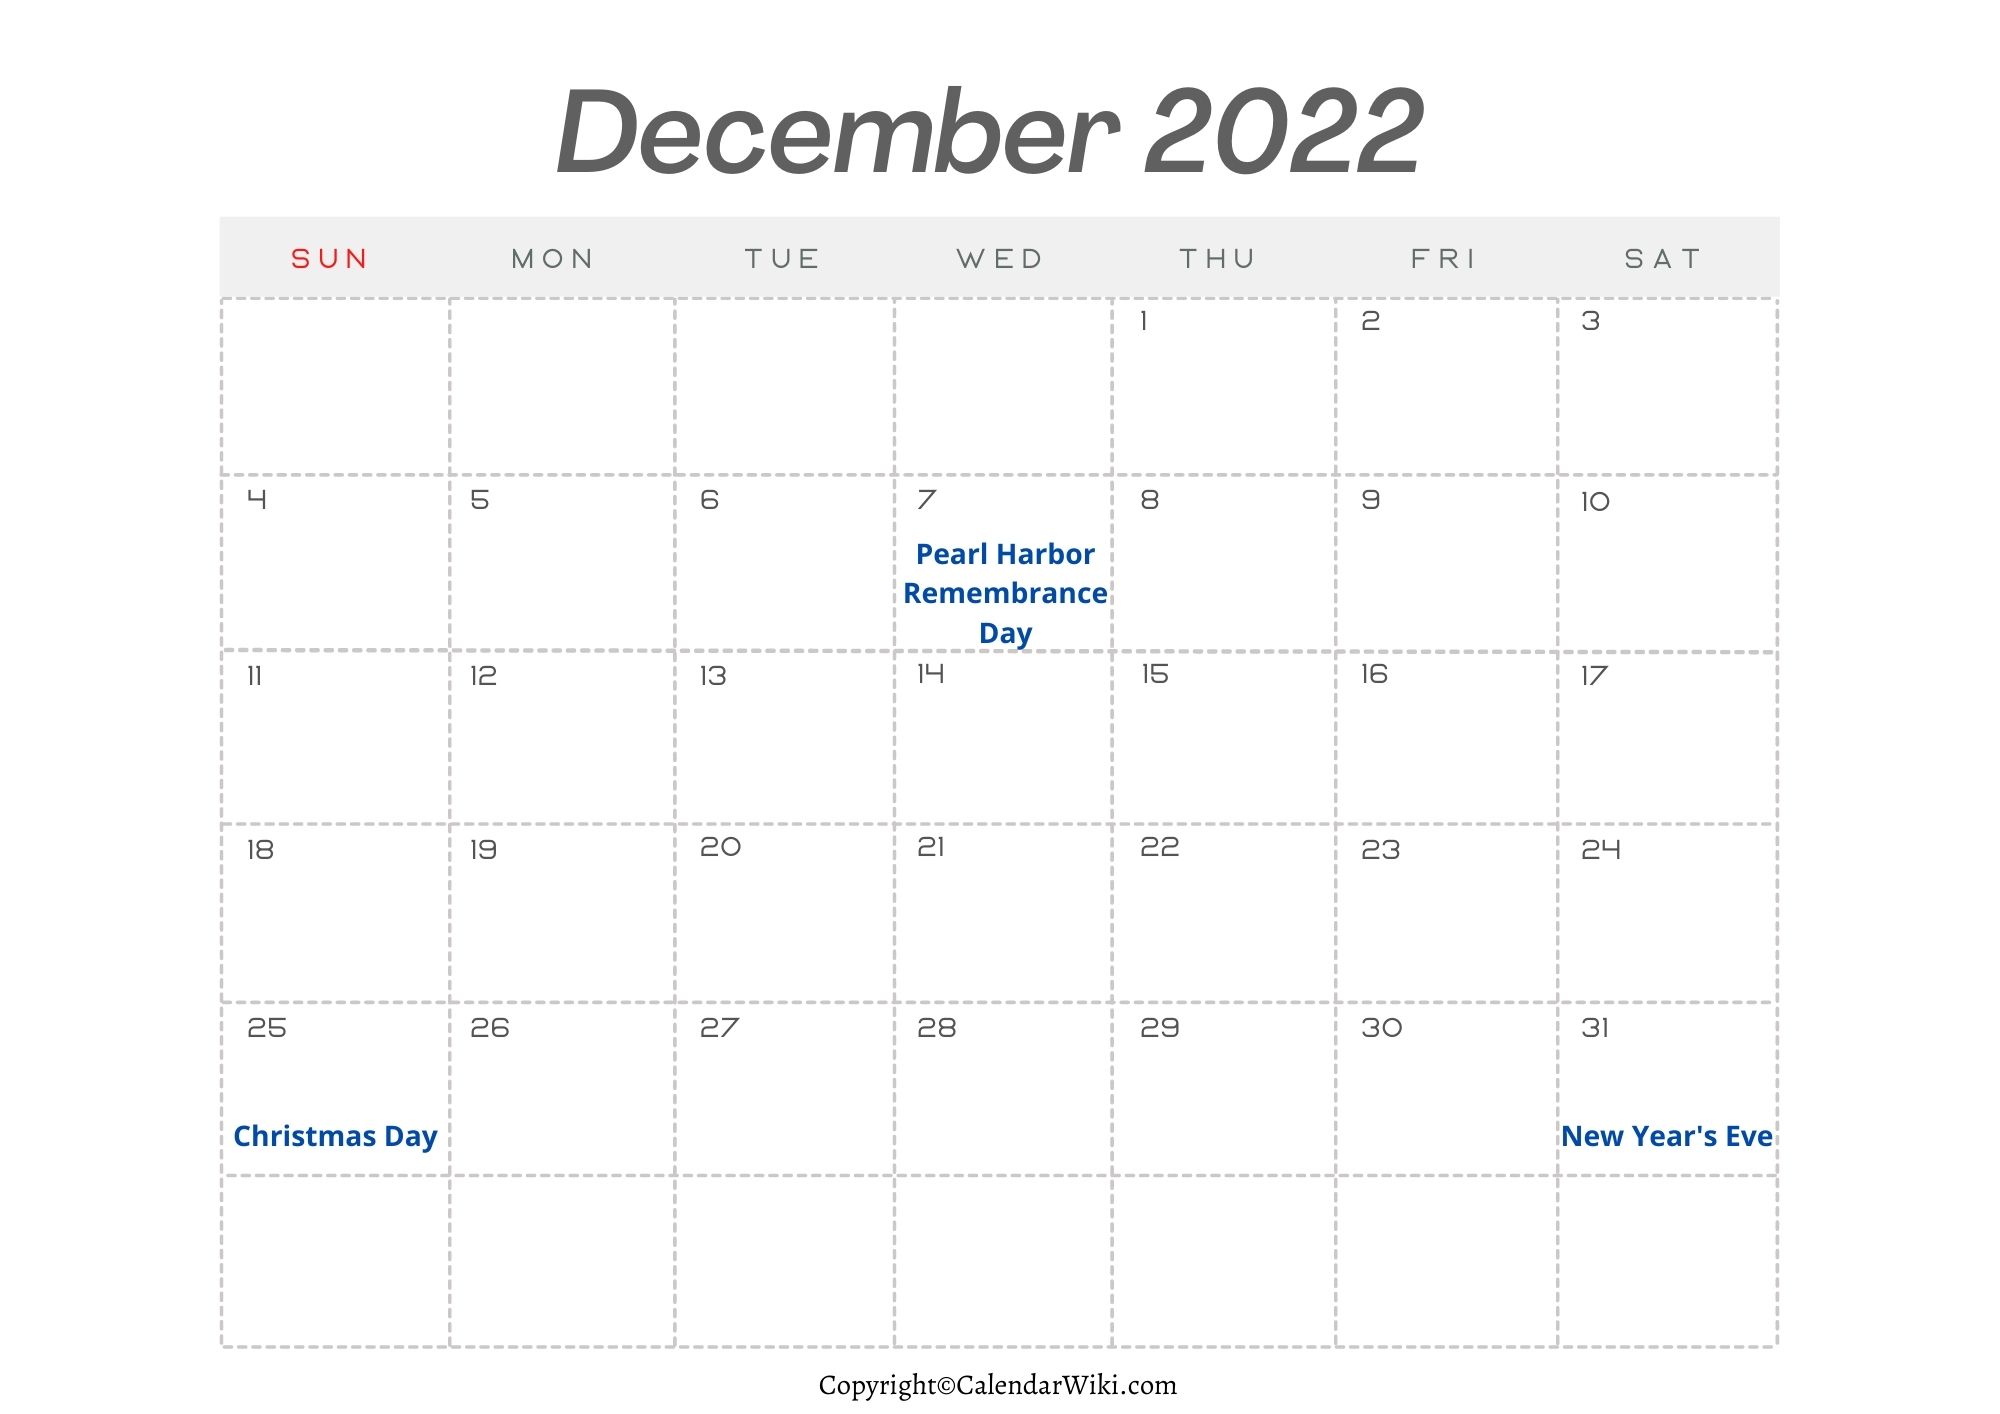 December Holidays 2022